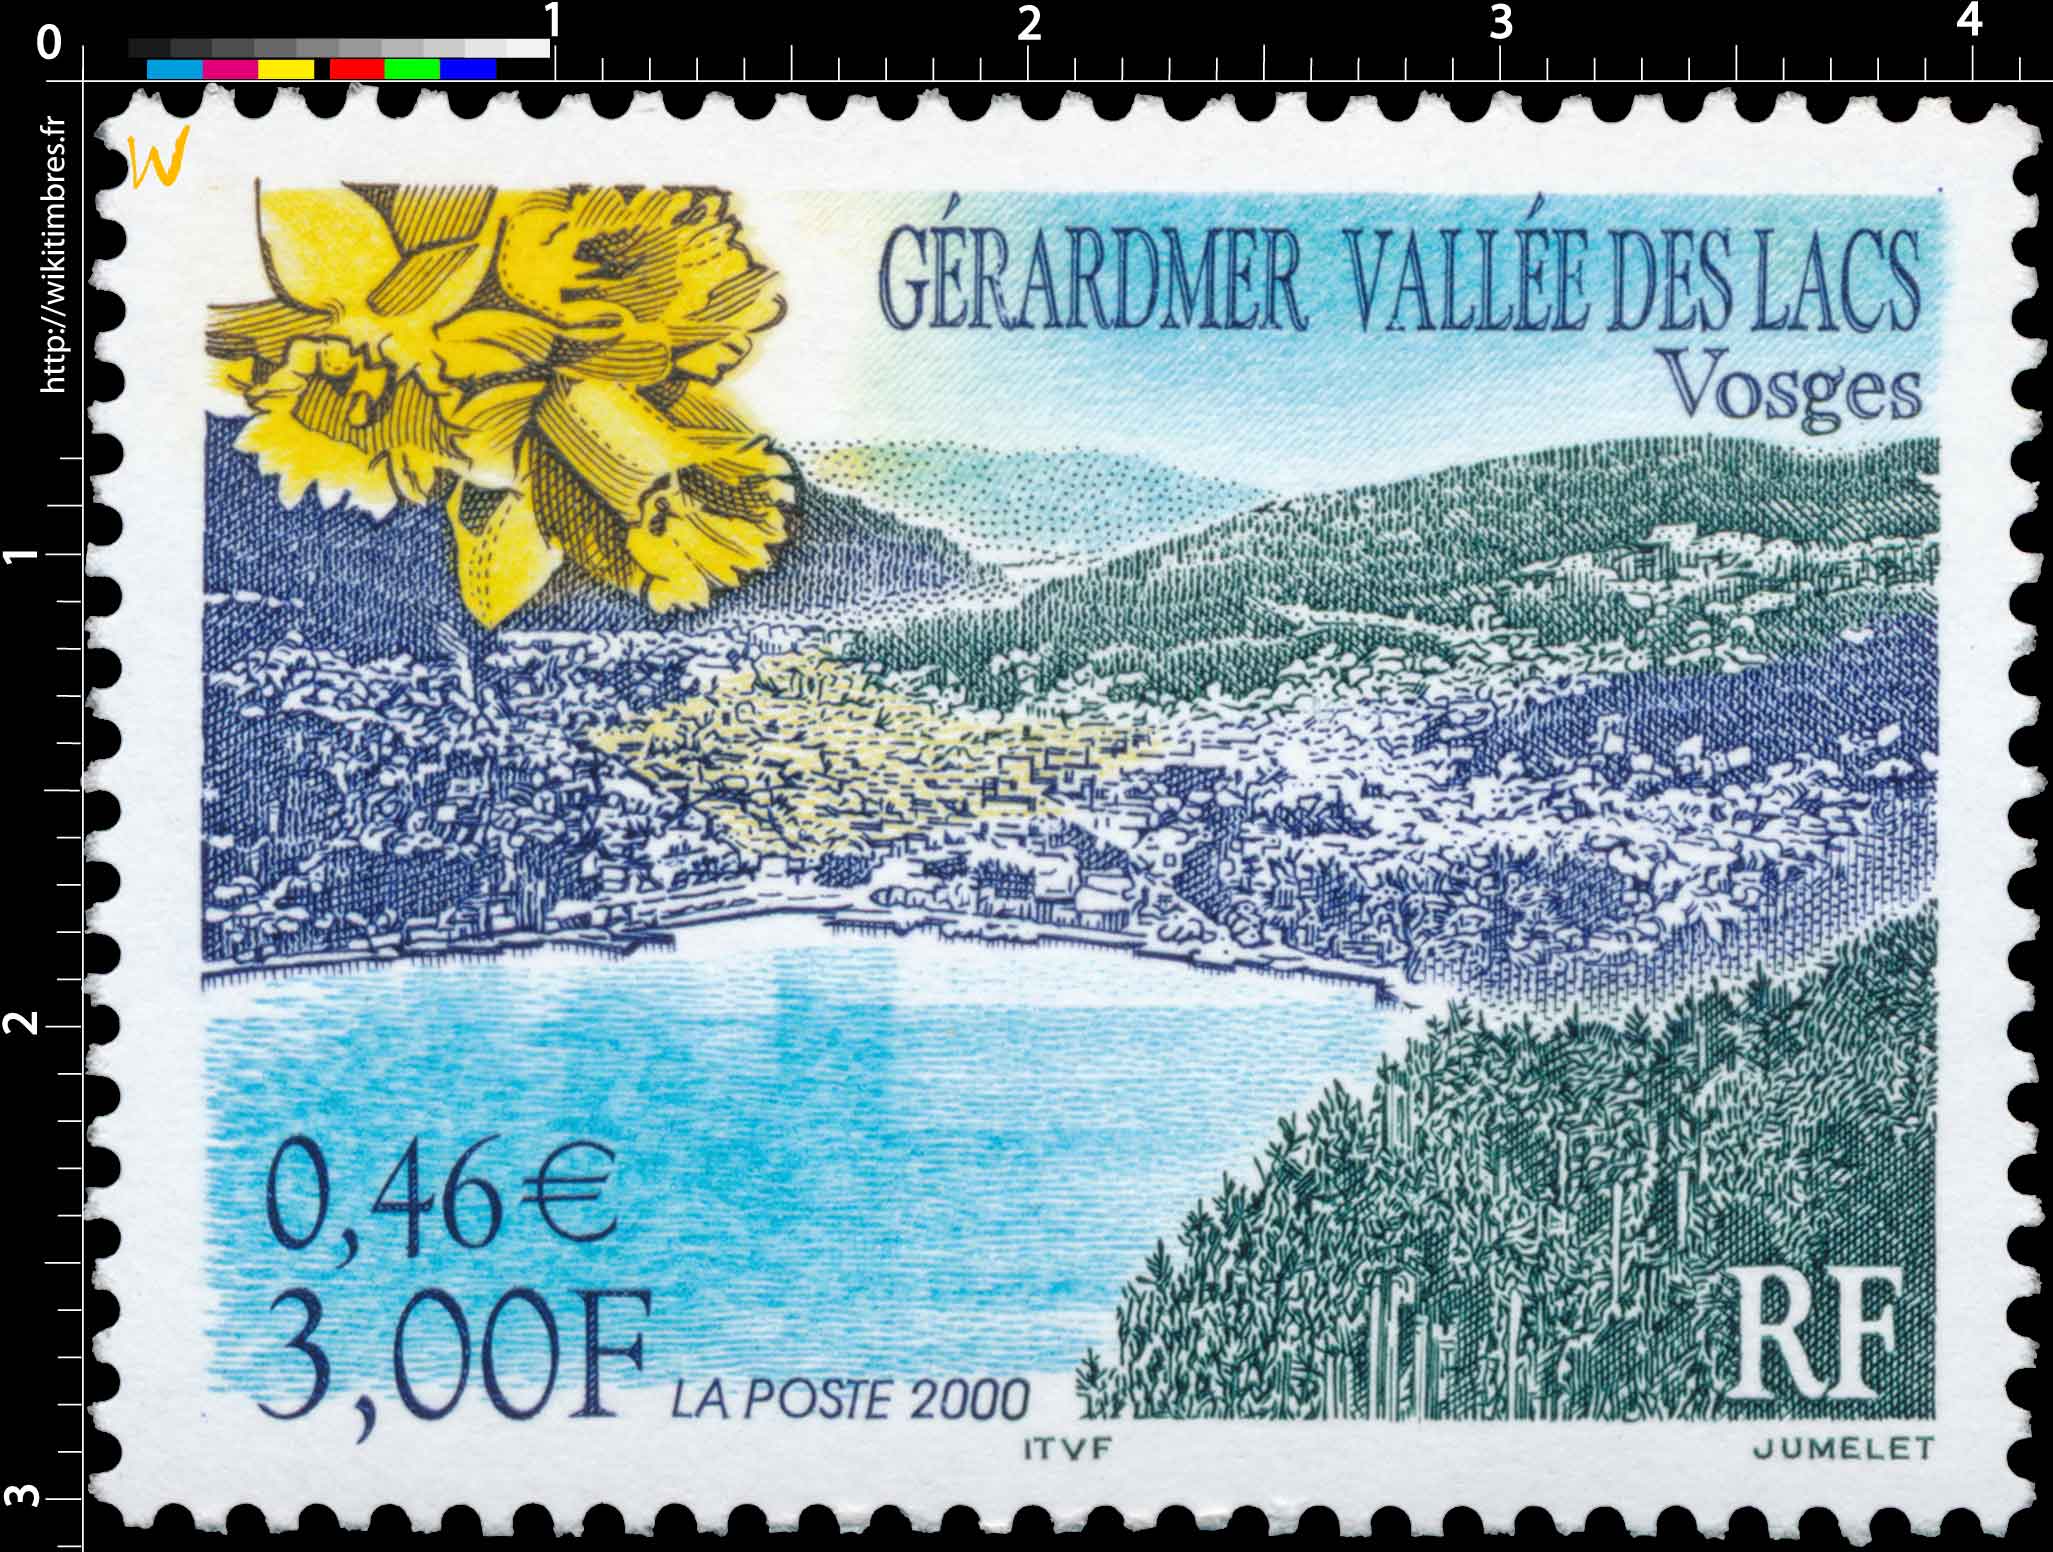 2000 GÉRARDMER VALLÉE DES LACS Vosges